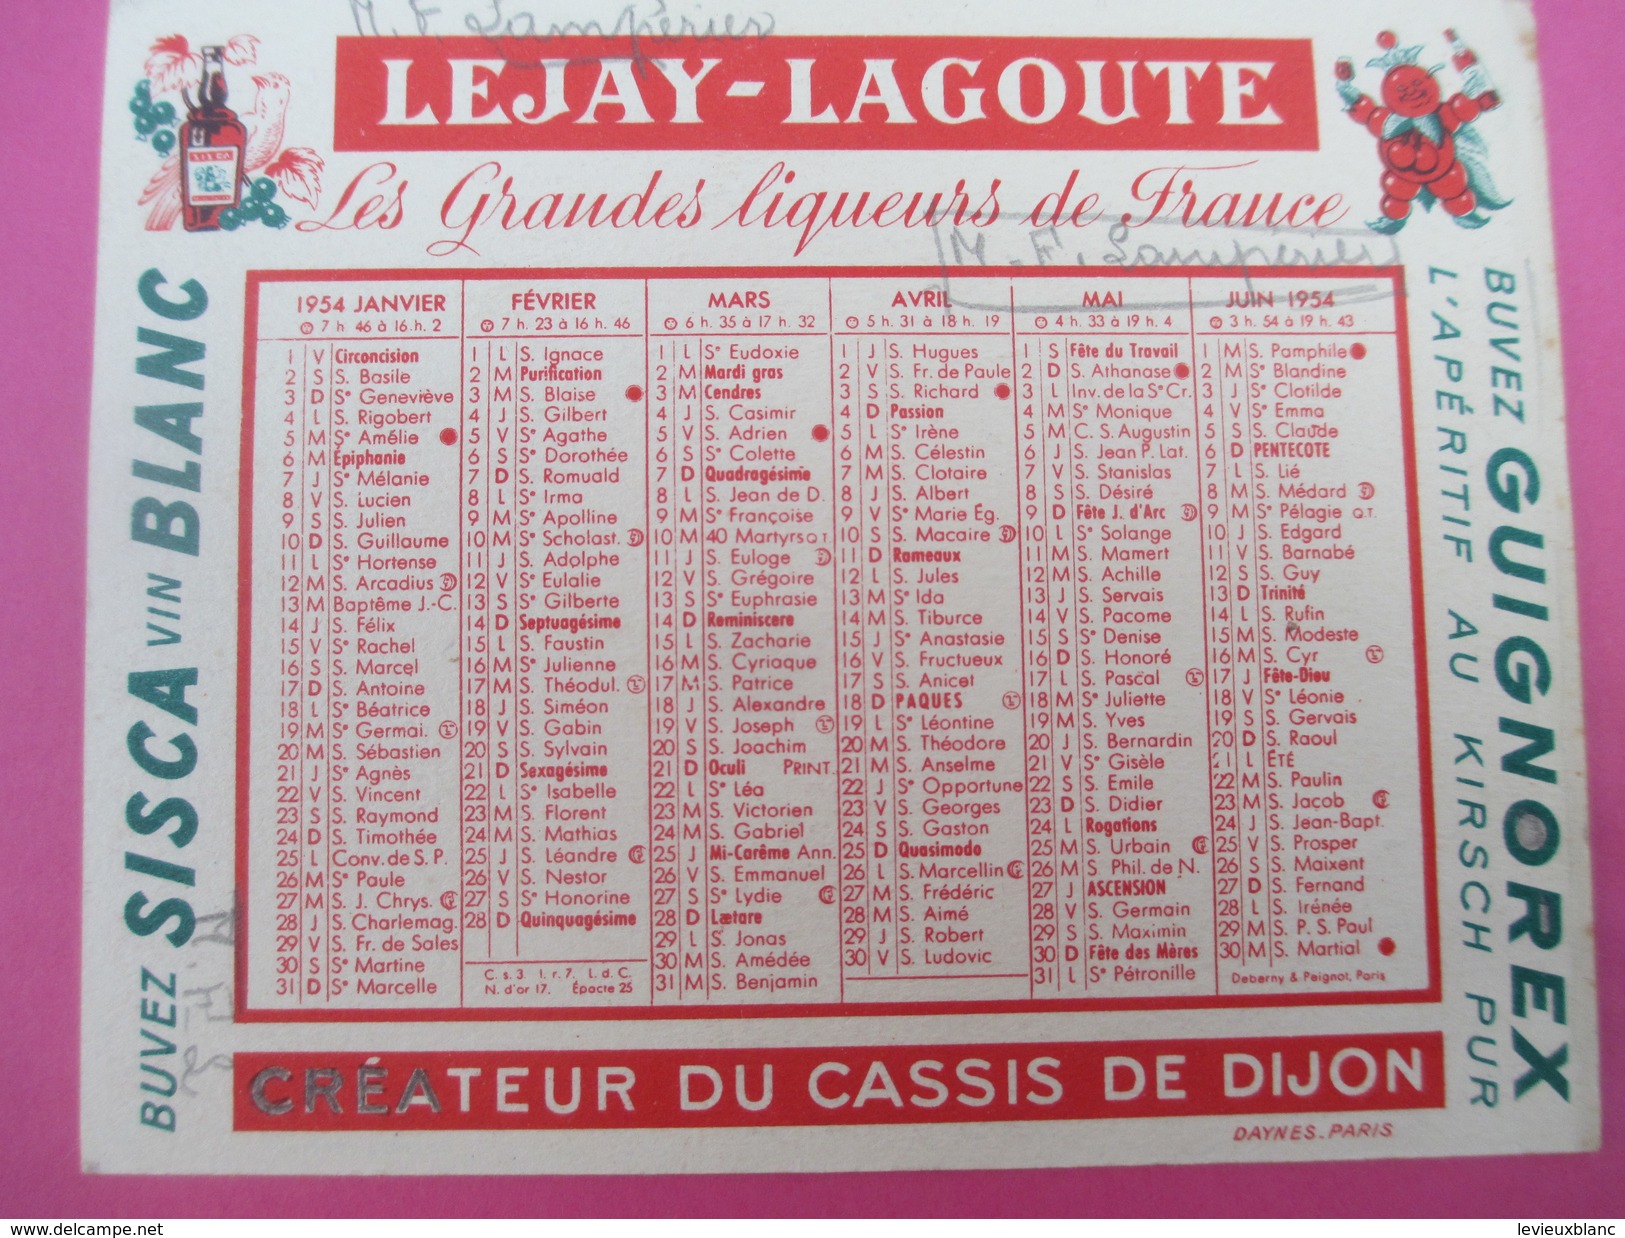 Petit Calendrier De Poche Recto-Verso/Lejay-Lagoute/ Créateur Du Cassis De DIJON/ MF Lamperier/1954     CAL362 - Petit Format : 1941-60